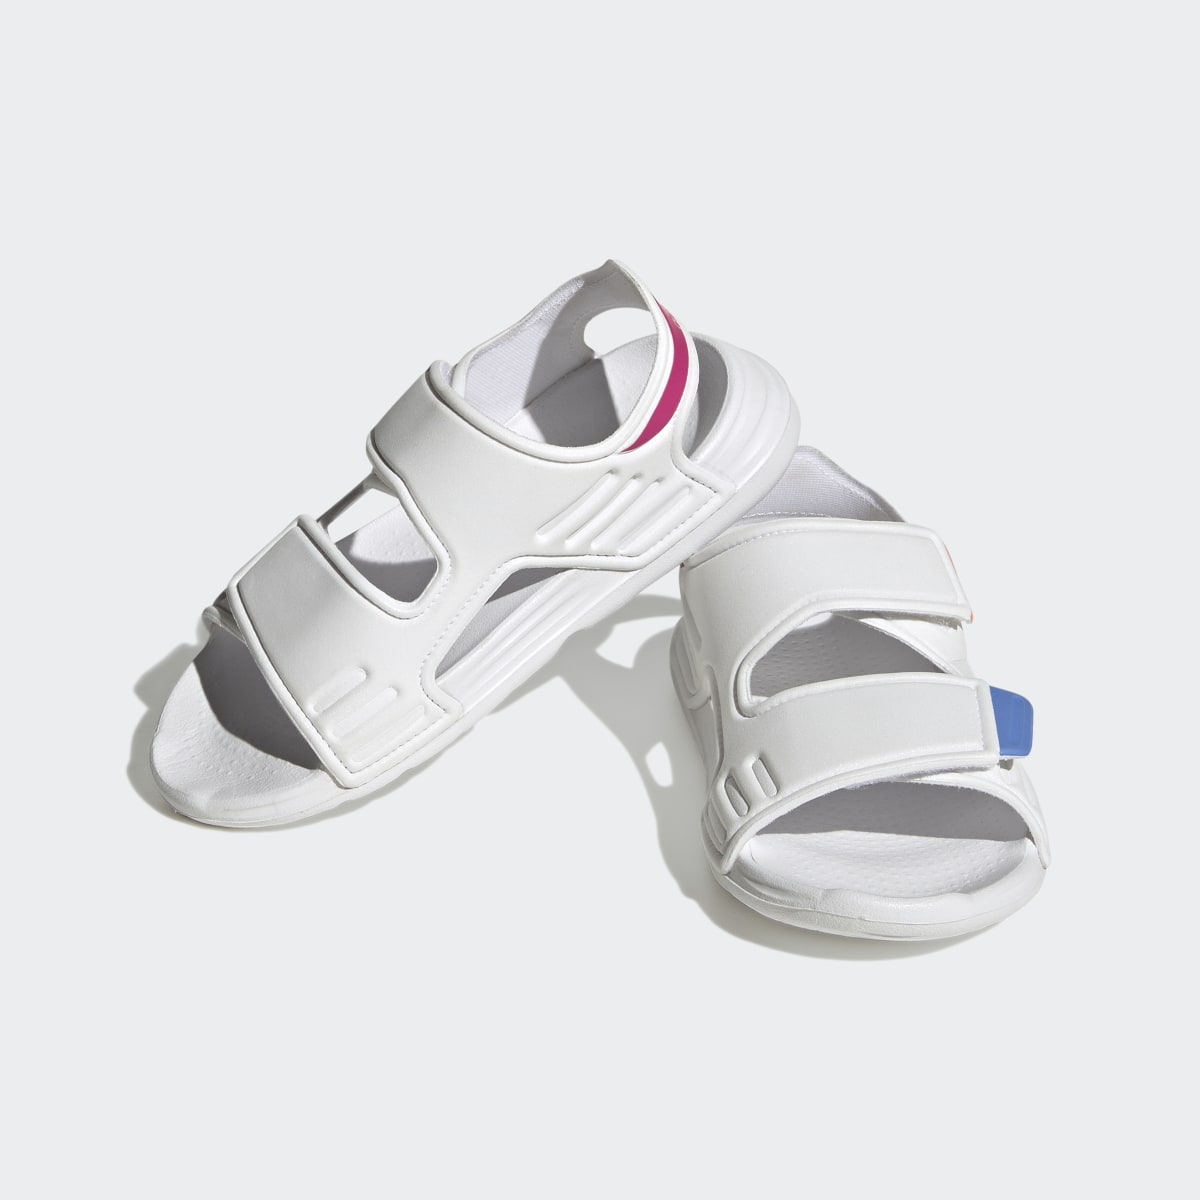 Adidas Altaswim Sandals. 5